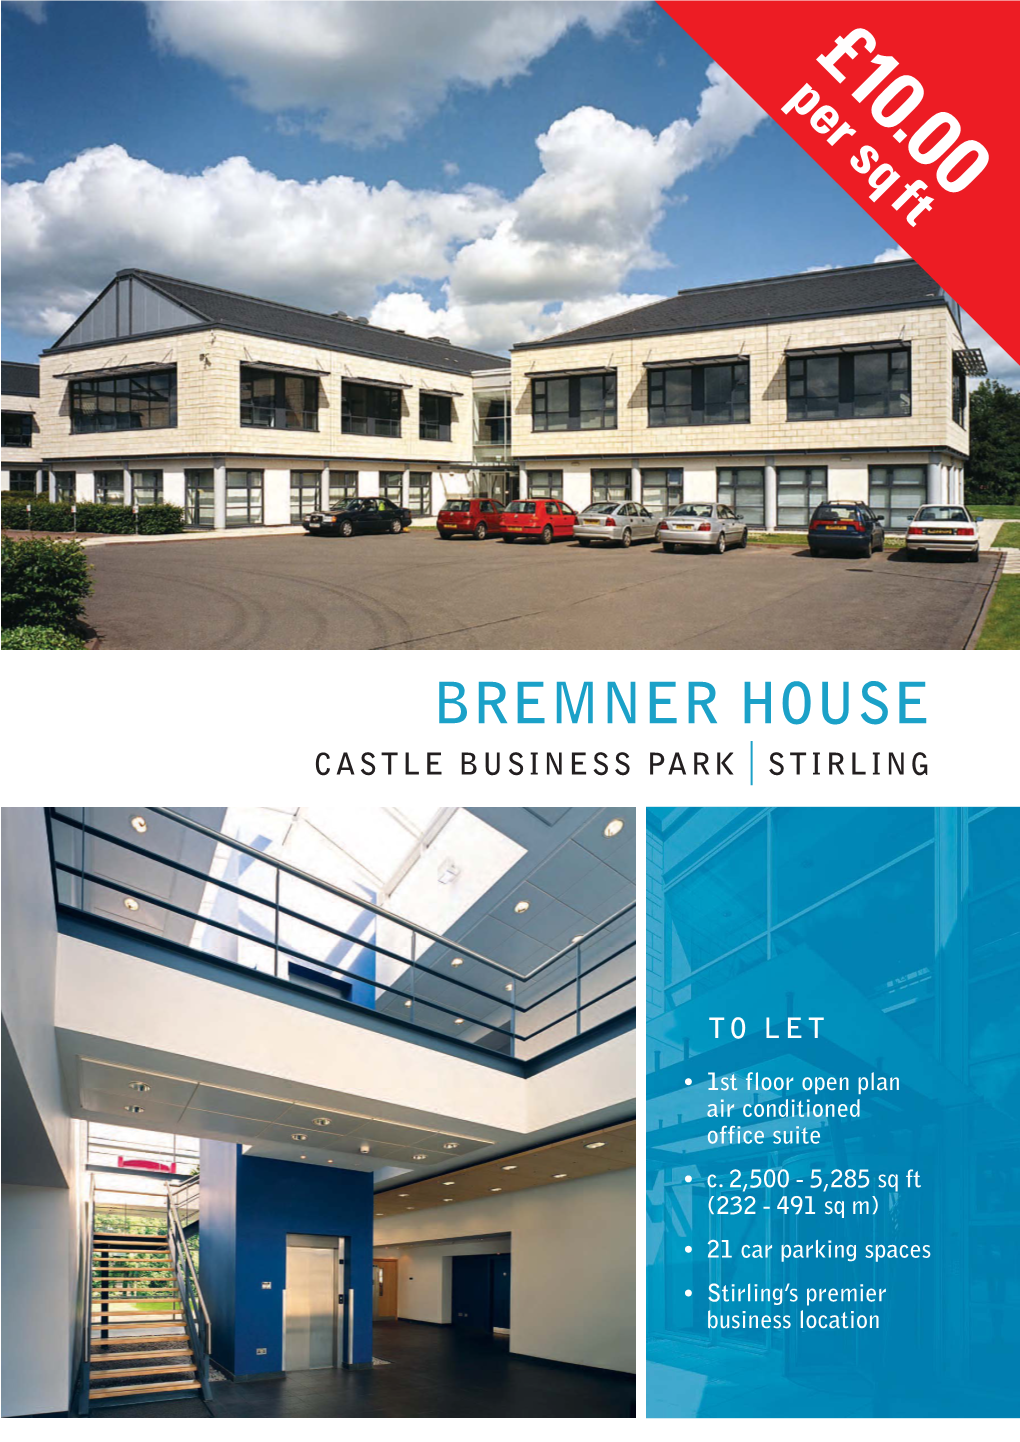 Bremner House Castle Business Park Stirling